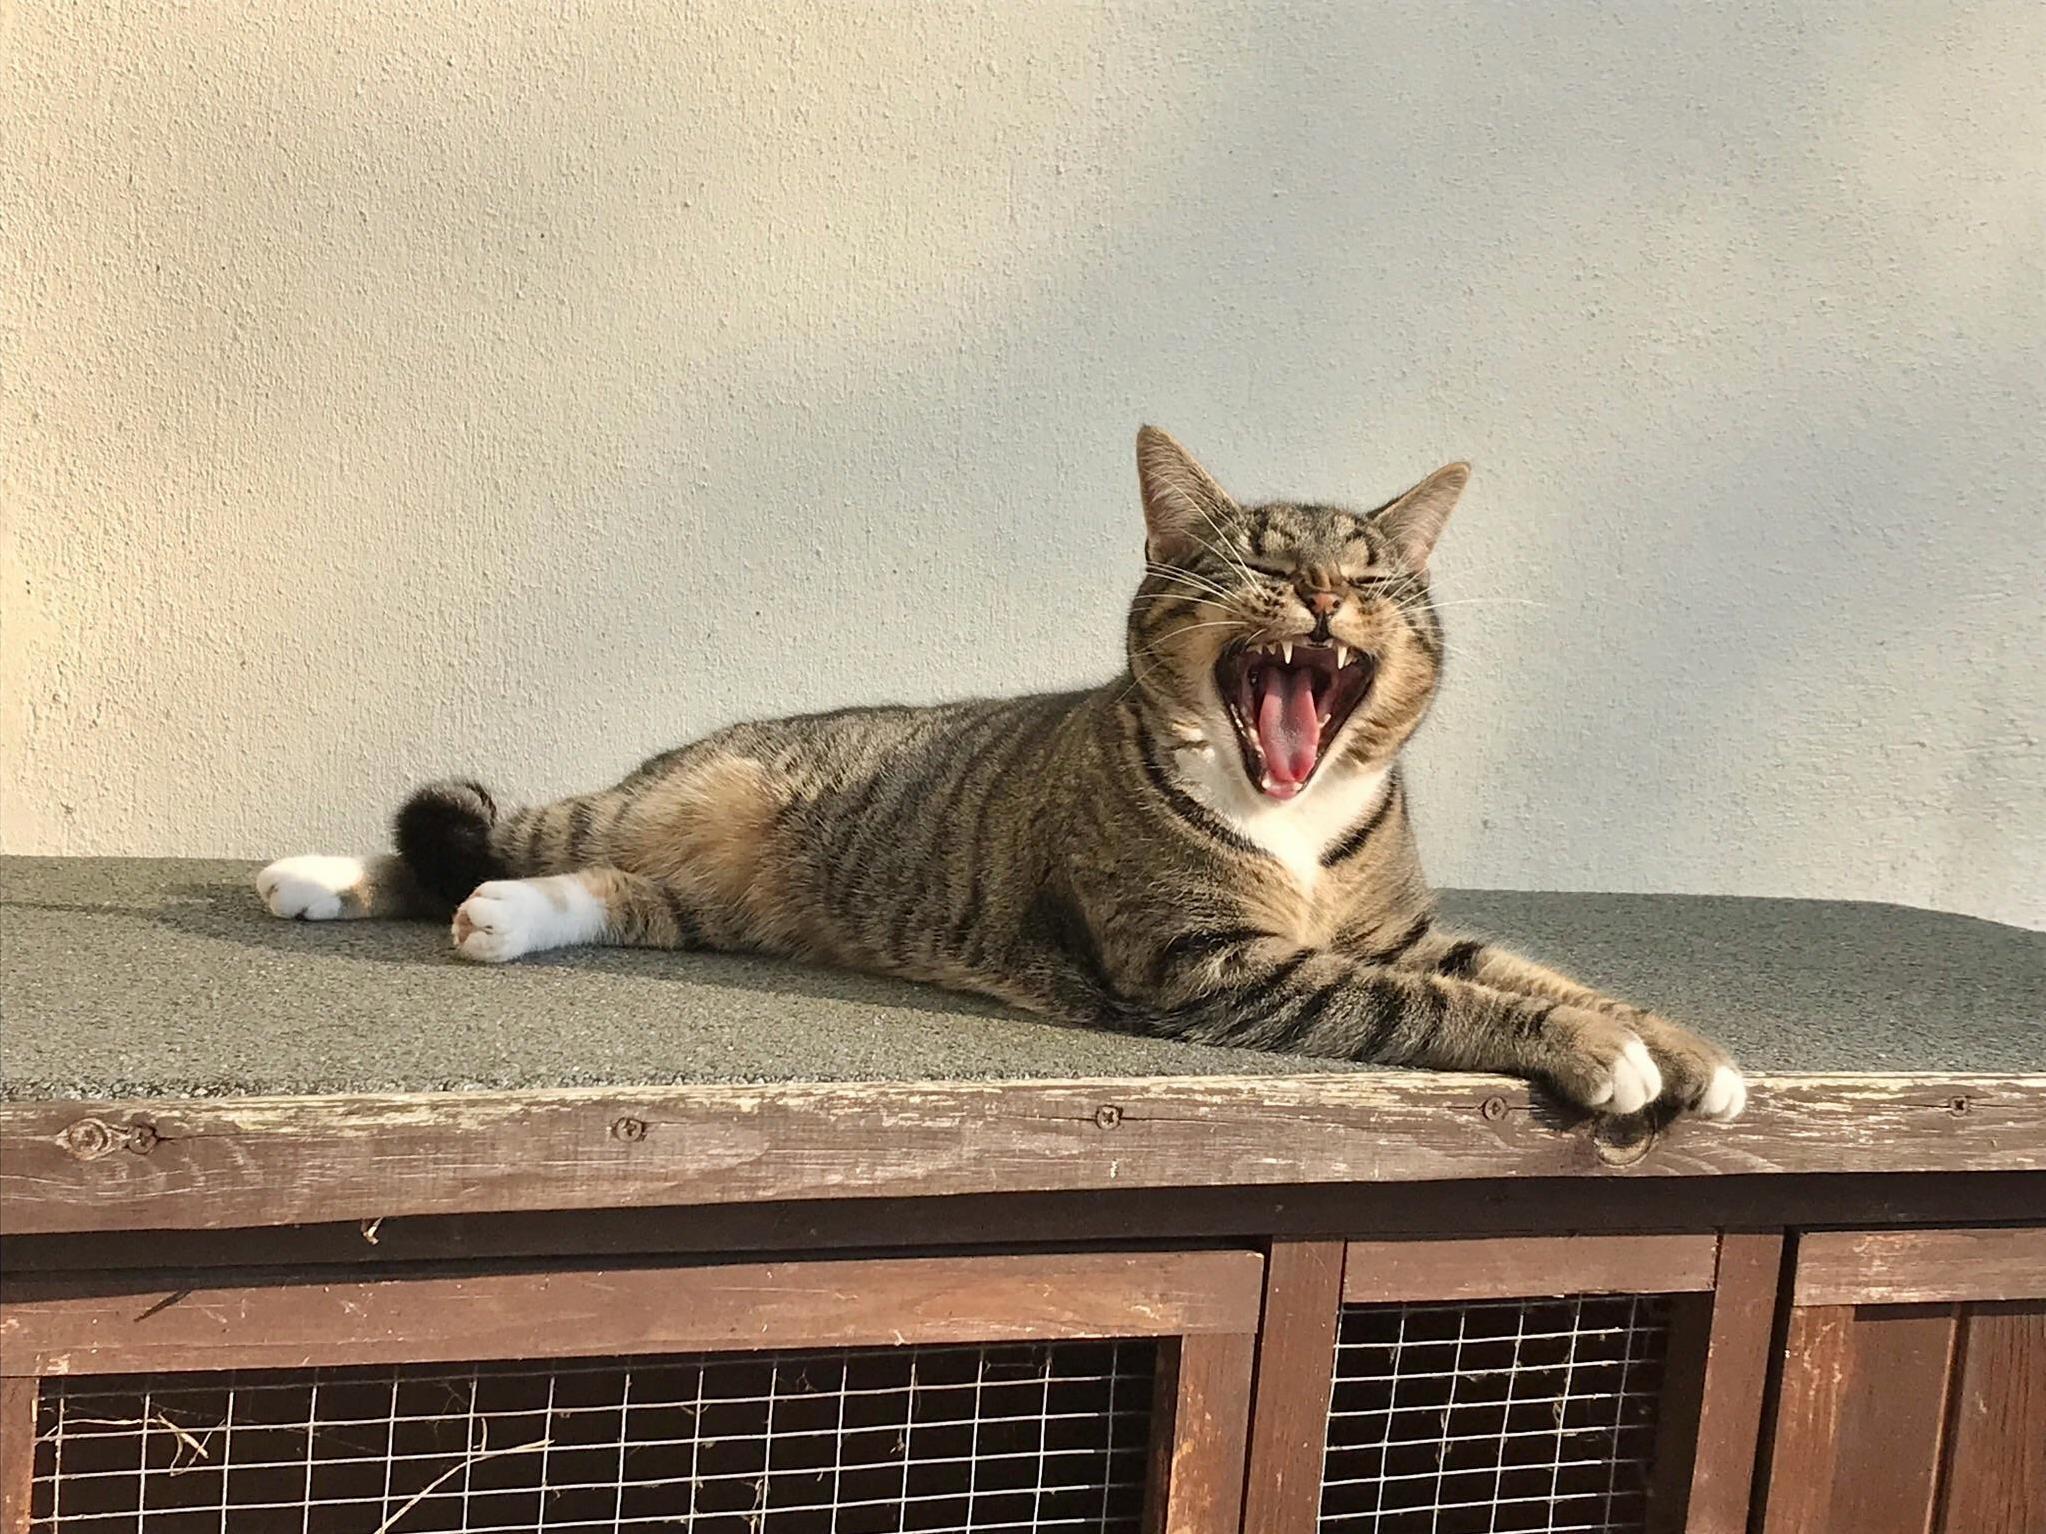 Roar of a lion